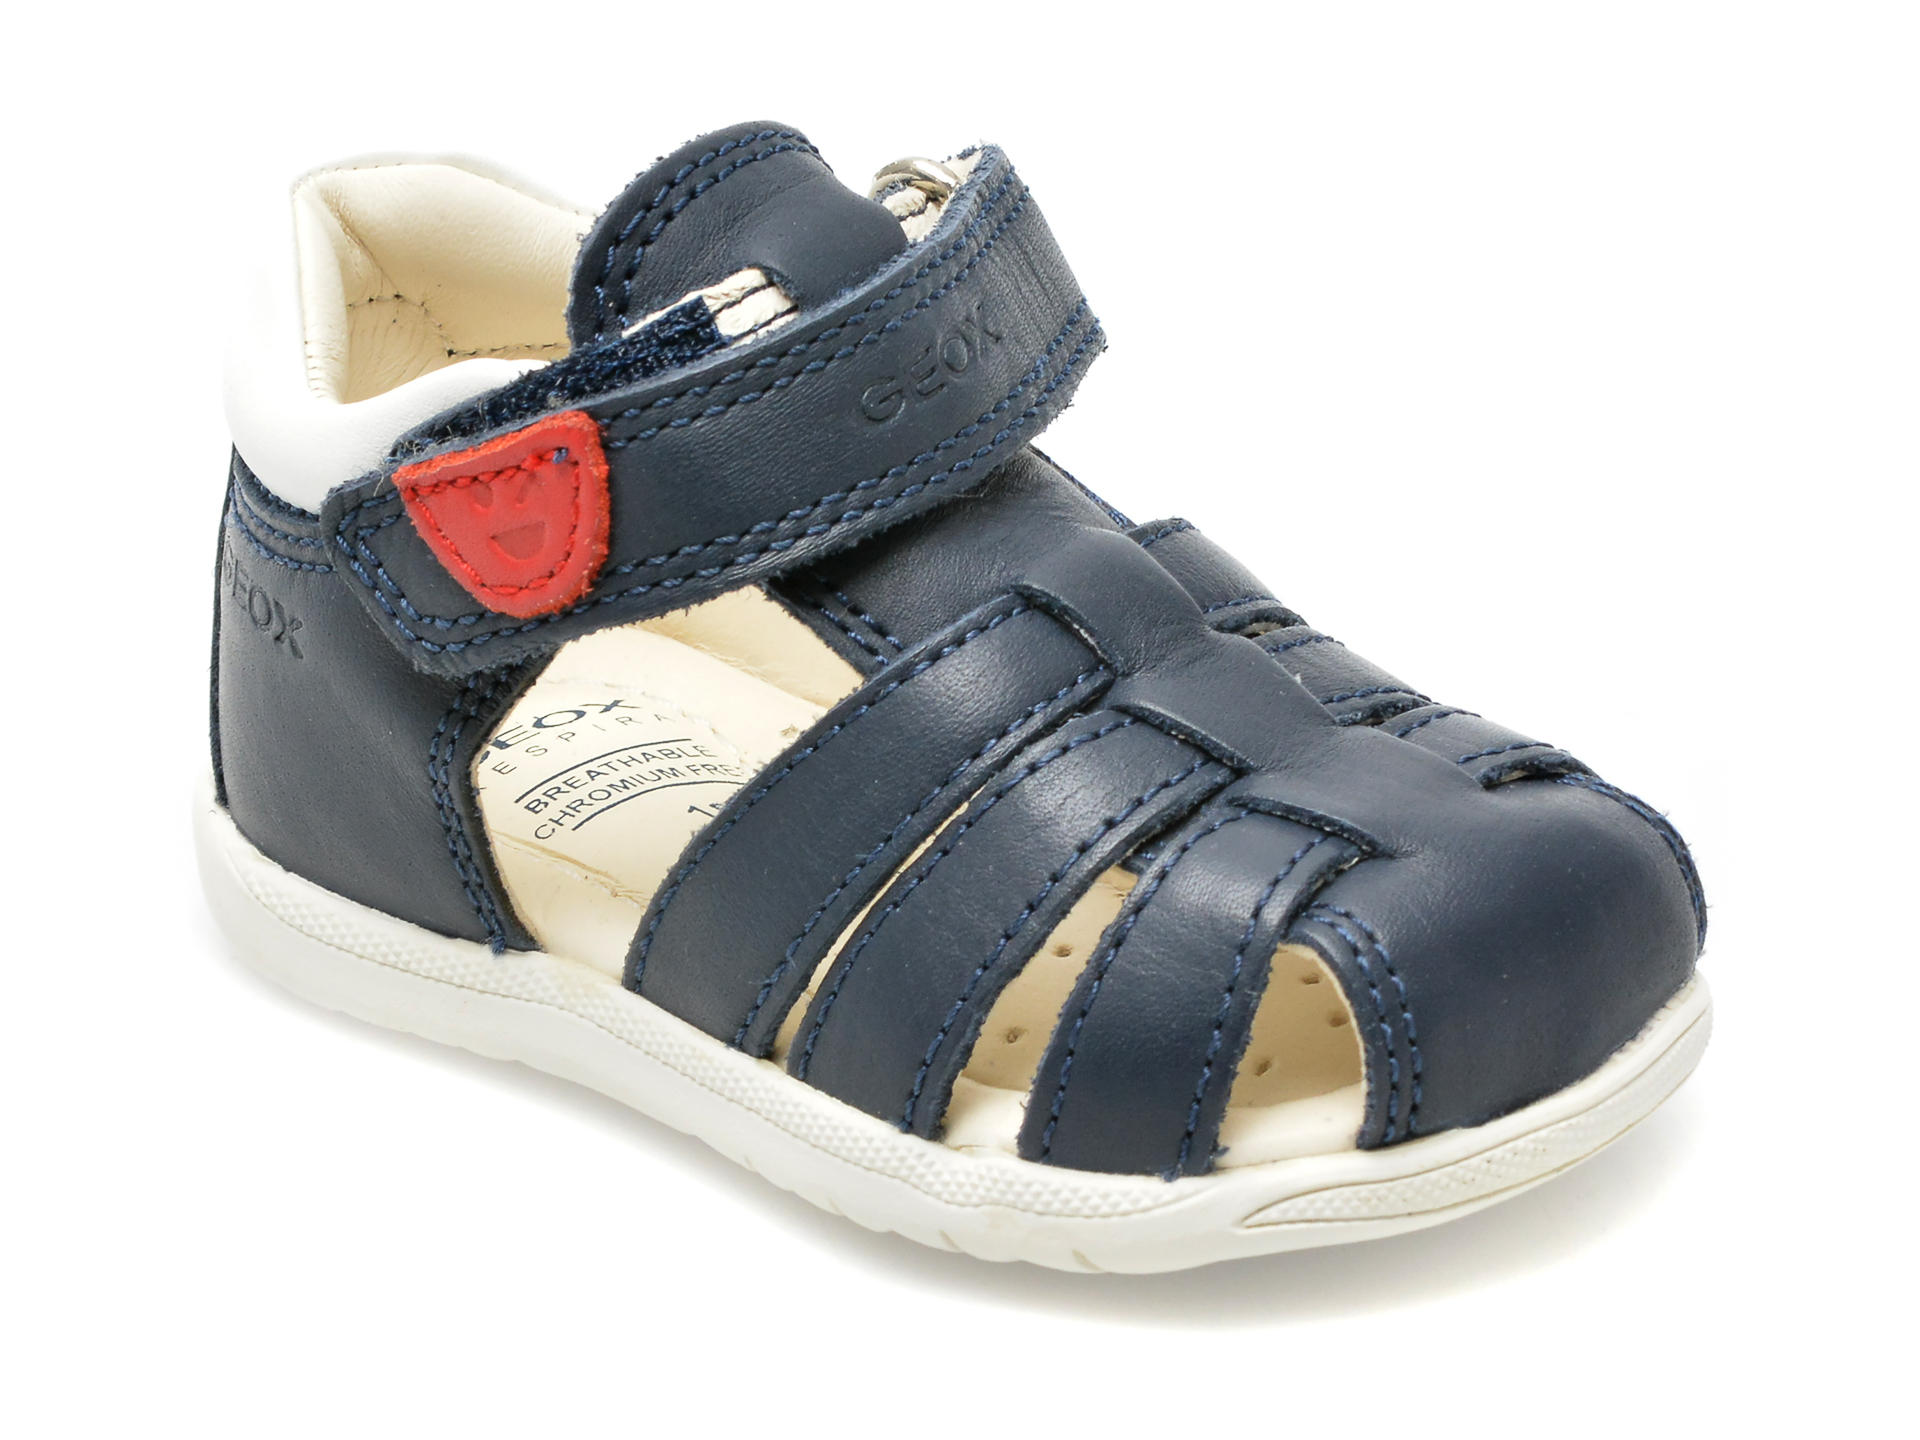 Pantofi GEOX bleumarin, B254VA, din piele naturala BAIETI 2023-09-28